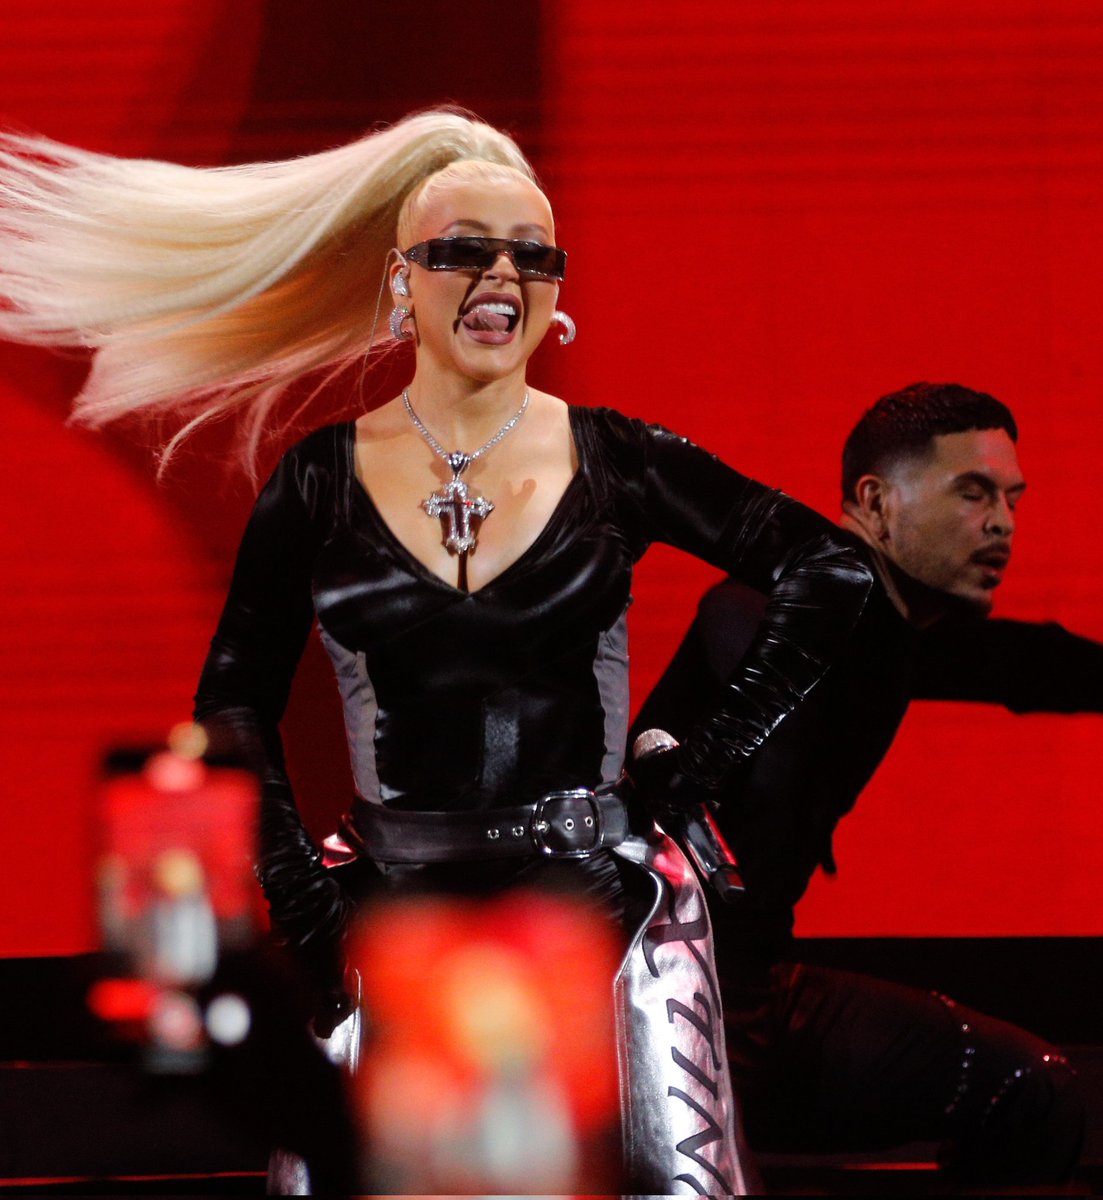 La realeza del pop llega a #Viña2023!!! Christina Aguilera debuta en Chile e inicia su desembarco definitivo en Latinoamérica desde nuestro Festival... La Quinta Vergara está hipnotizada con una de las mejores voces del pop mundial!!! 💥💥